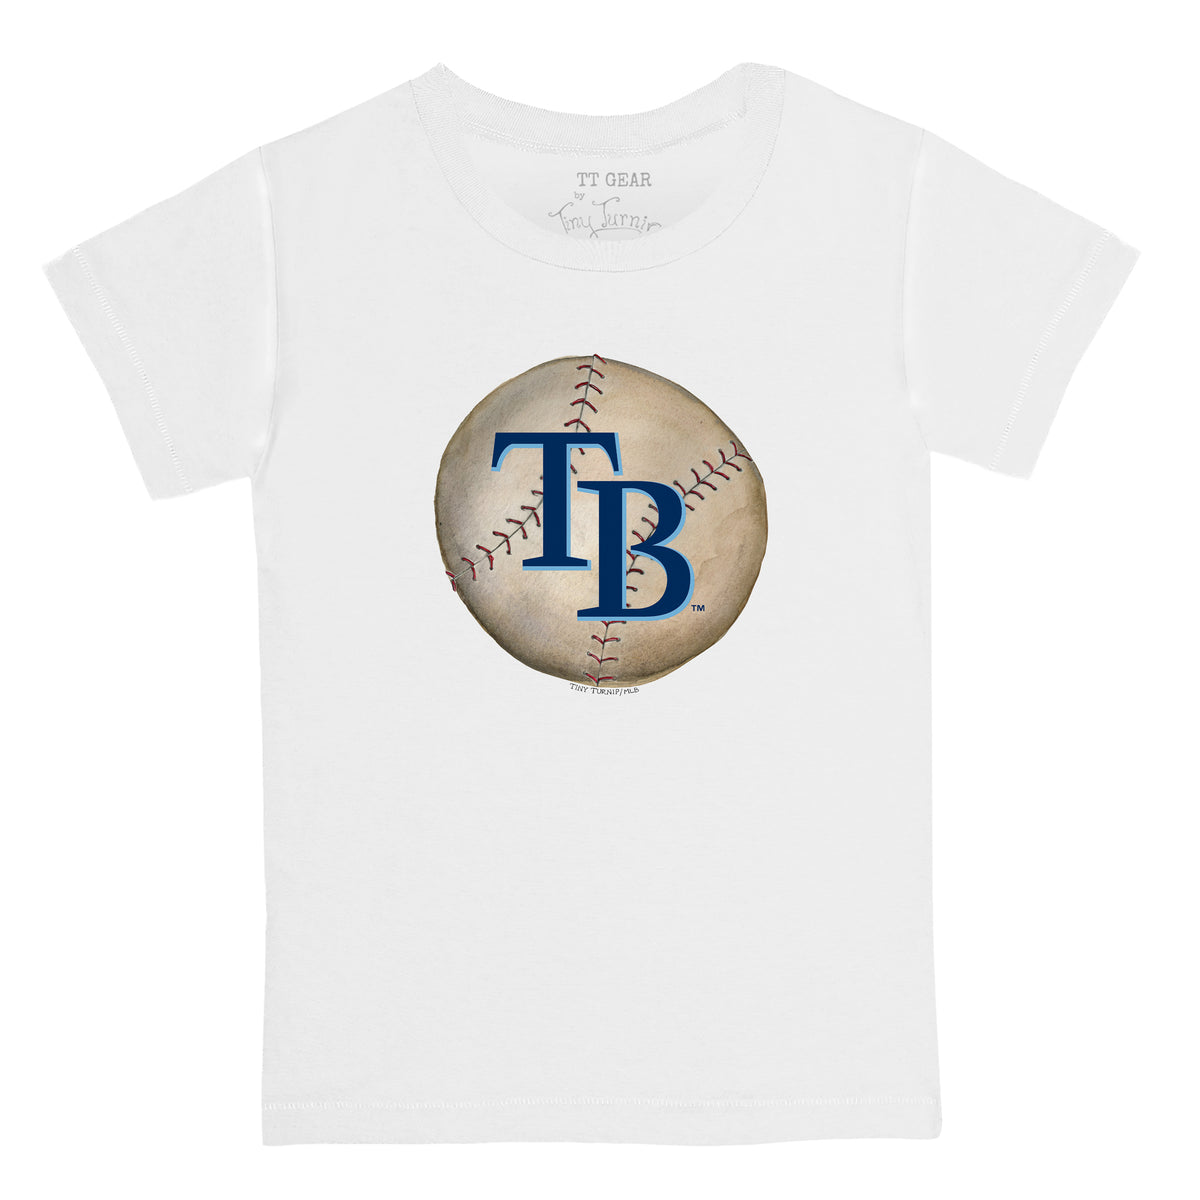 Tampa Bay Rays Stitched Baseball Tee Shirt